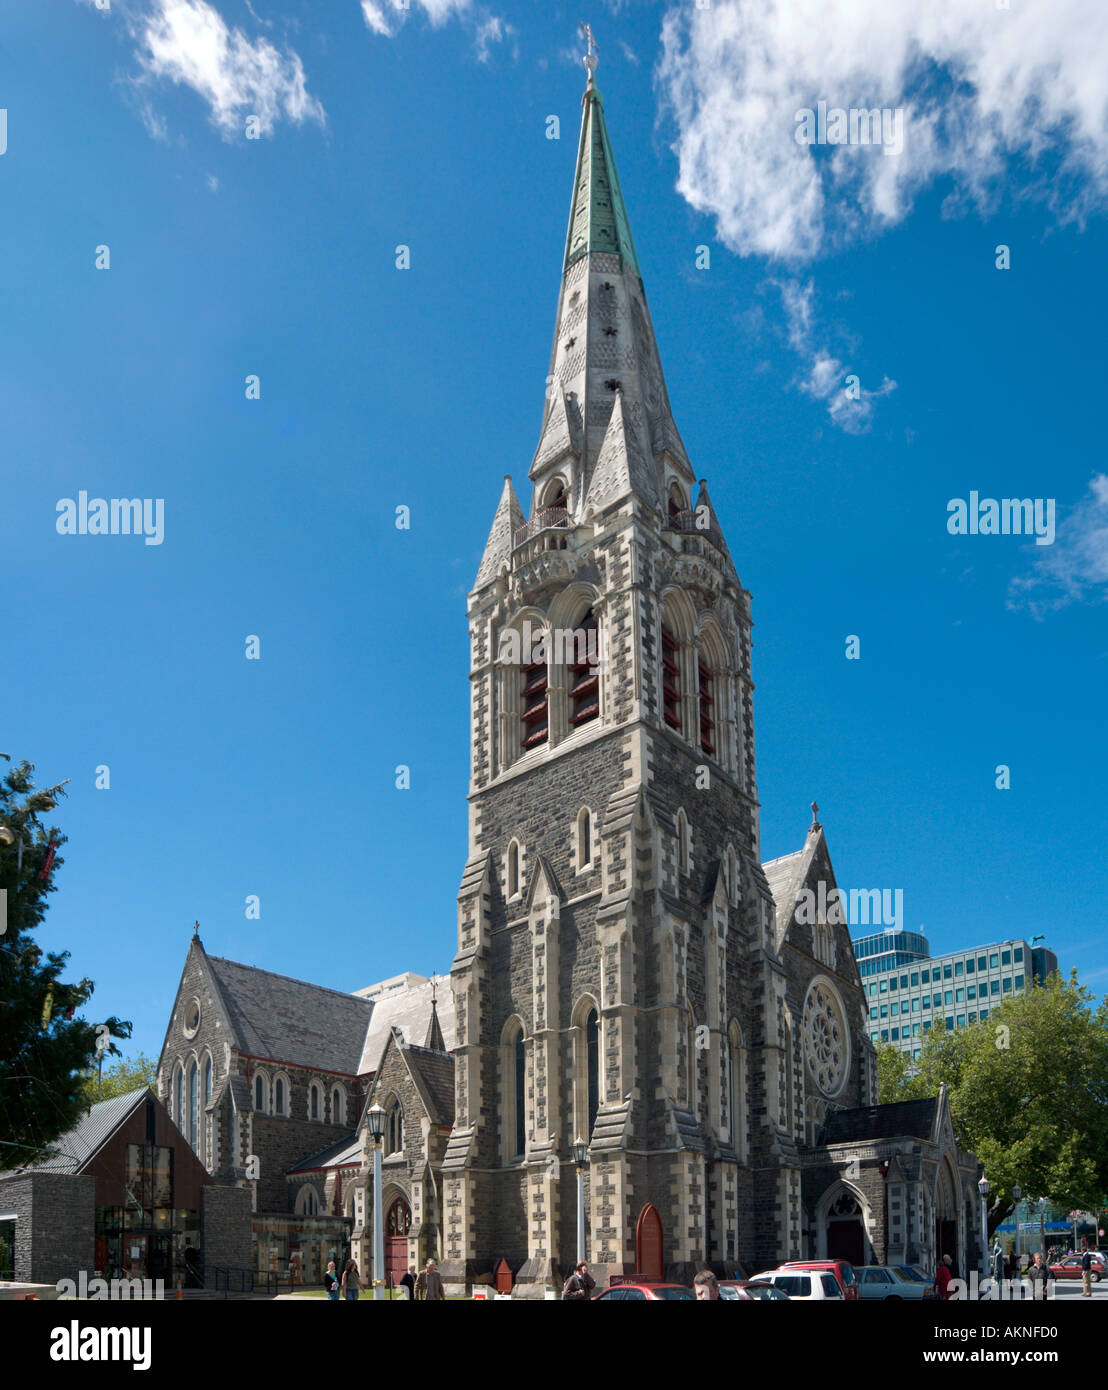 Cattedrale Di Christchurch, Christchurch, South Island, Nuova Zelanda. Immagine scattata prima del terremoto del 2011. Foto Stock